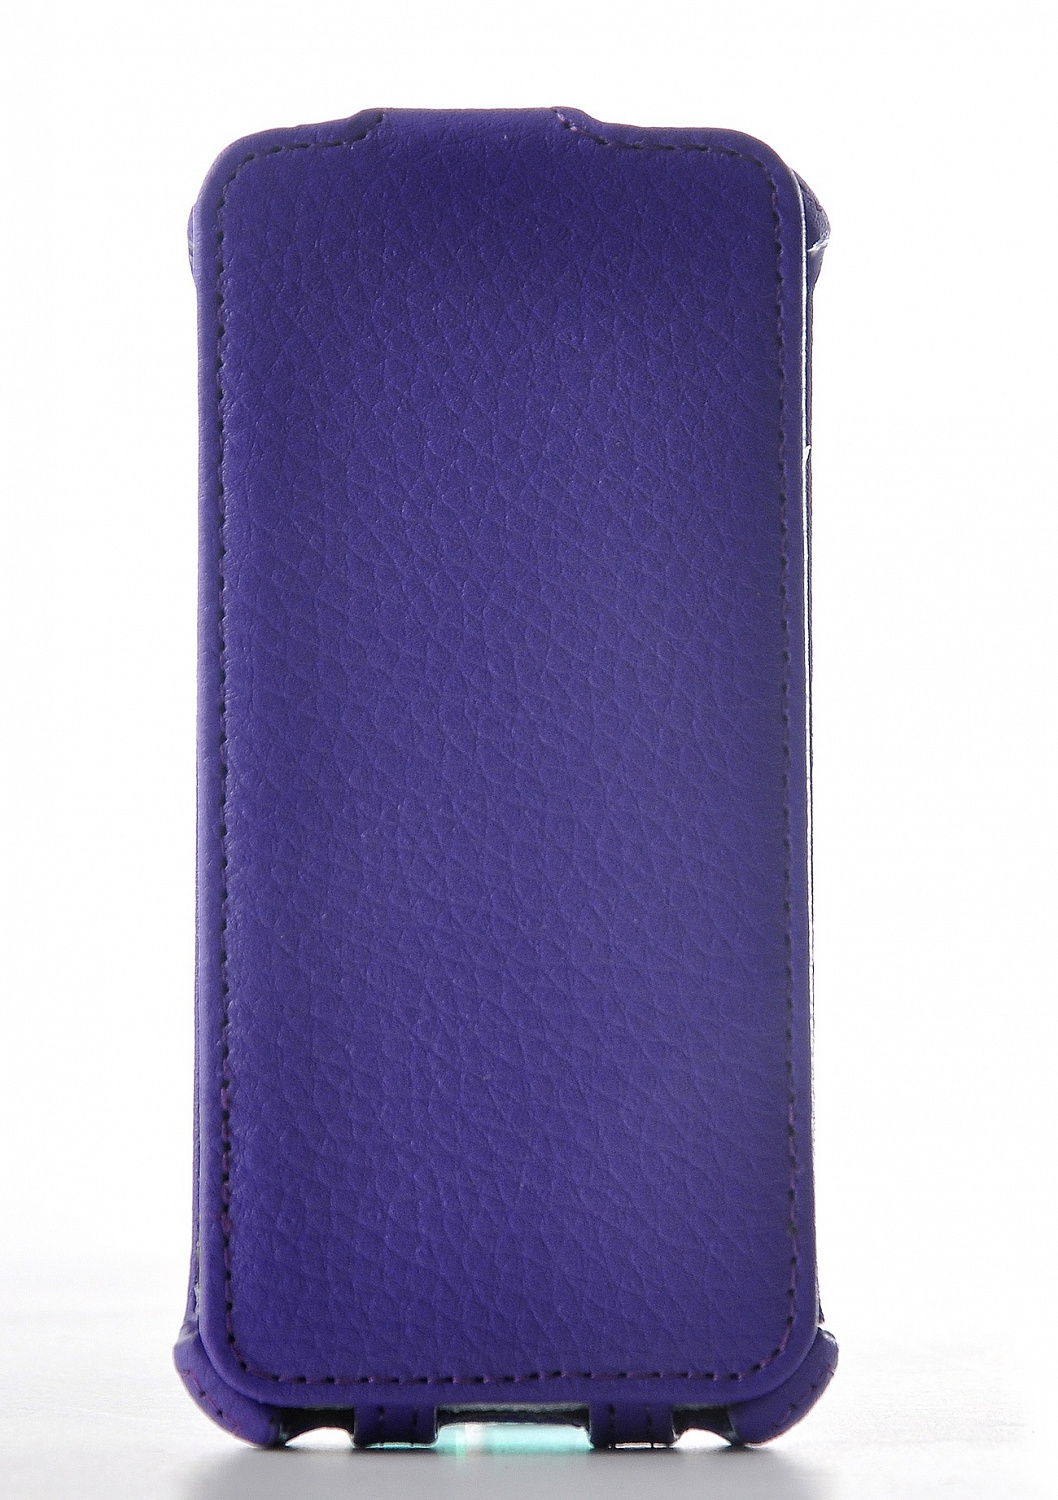 Чехол EGGO Flipcover для iPhone 5/5S (фиолетовый) - ITMag